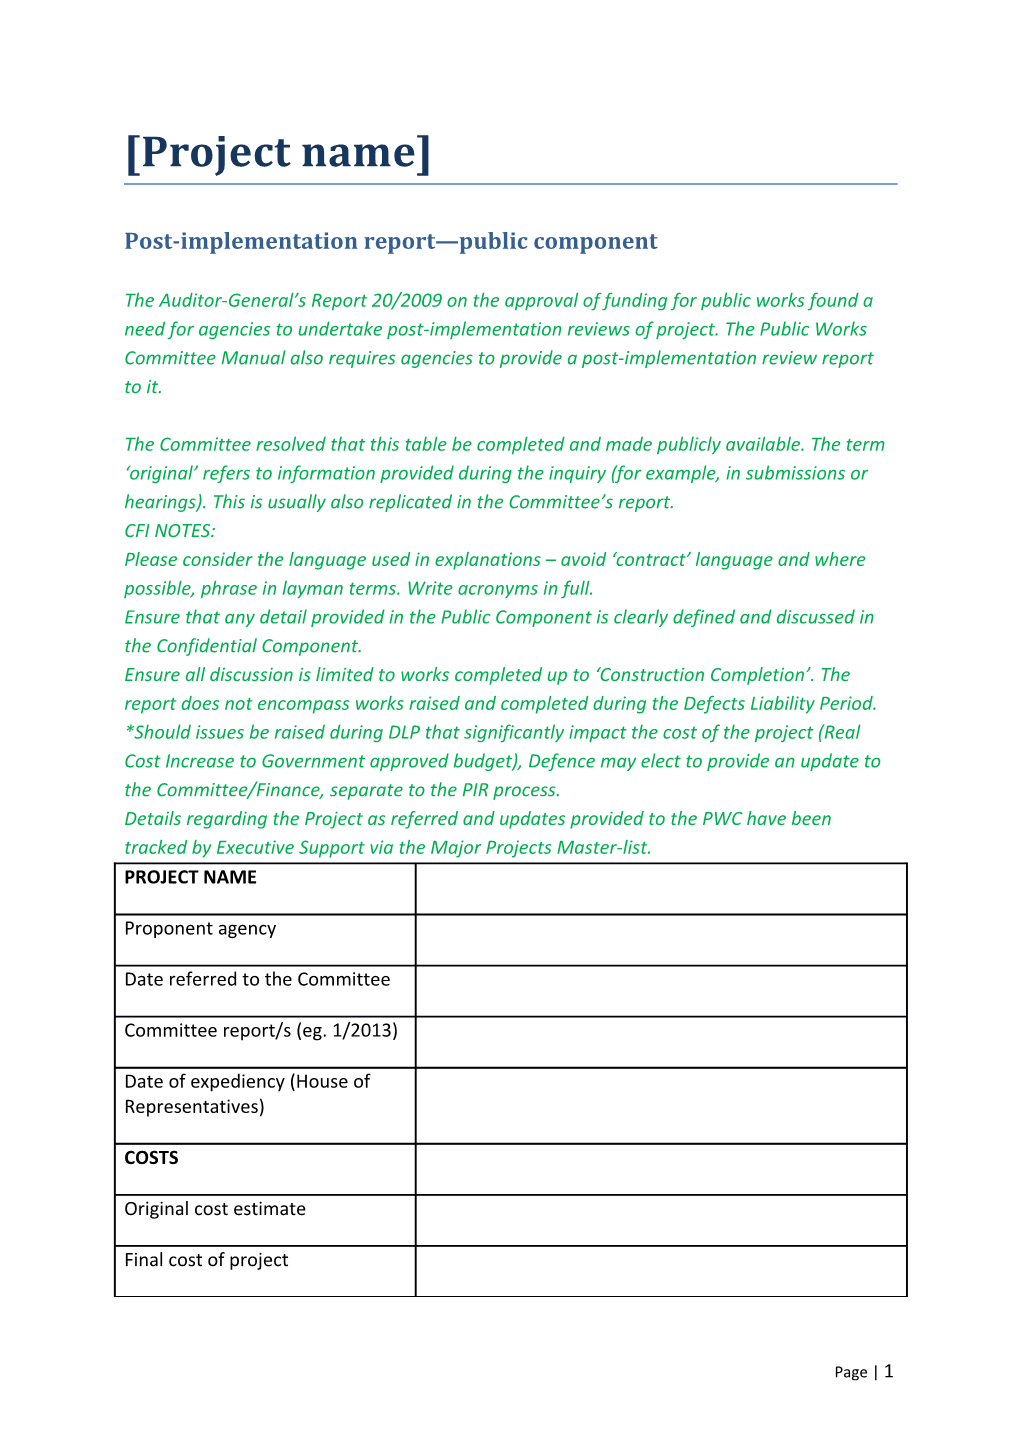 Post-Implementation Report Public Component